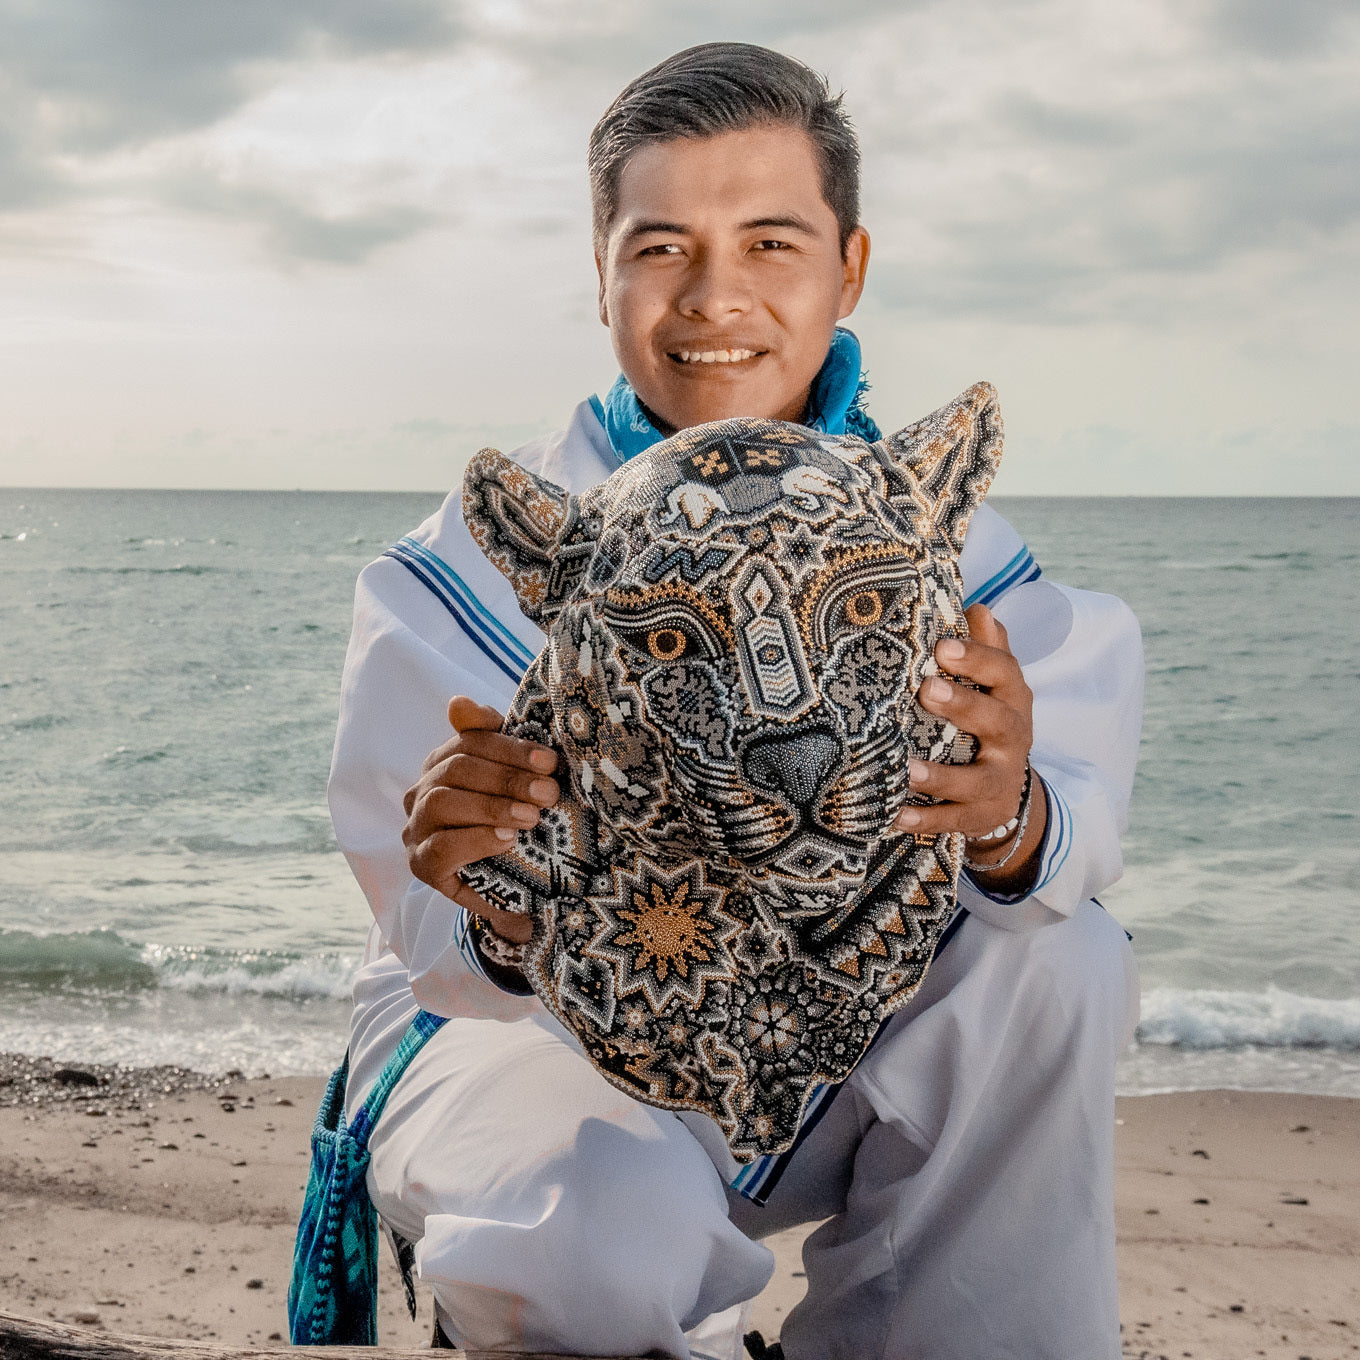 Artesano huichol sosteniendo una obra de arte que representa al jaguar con simbolos wixarikas